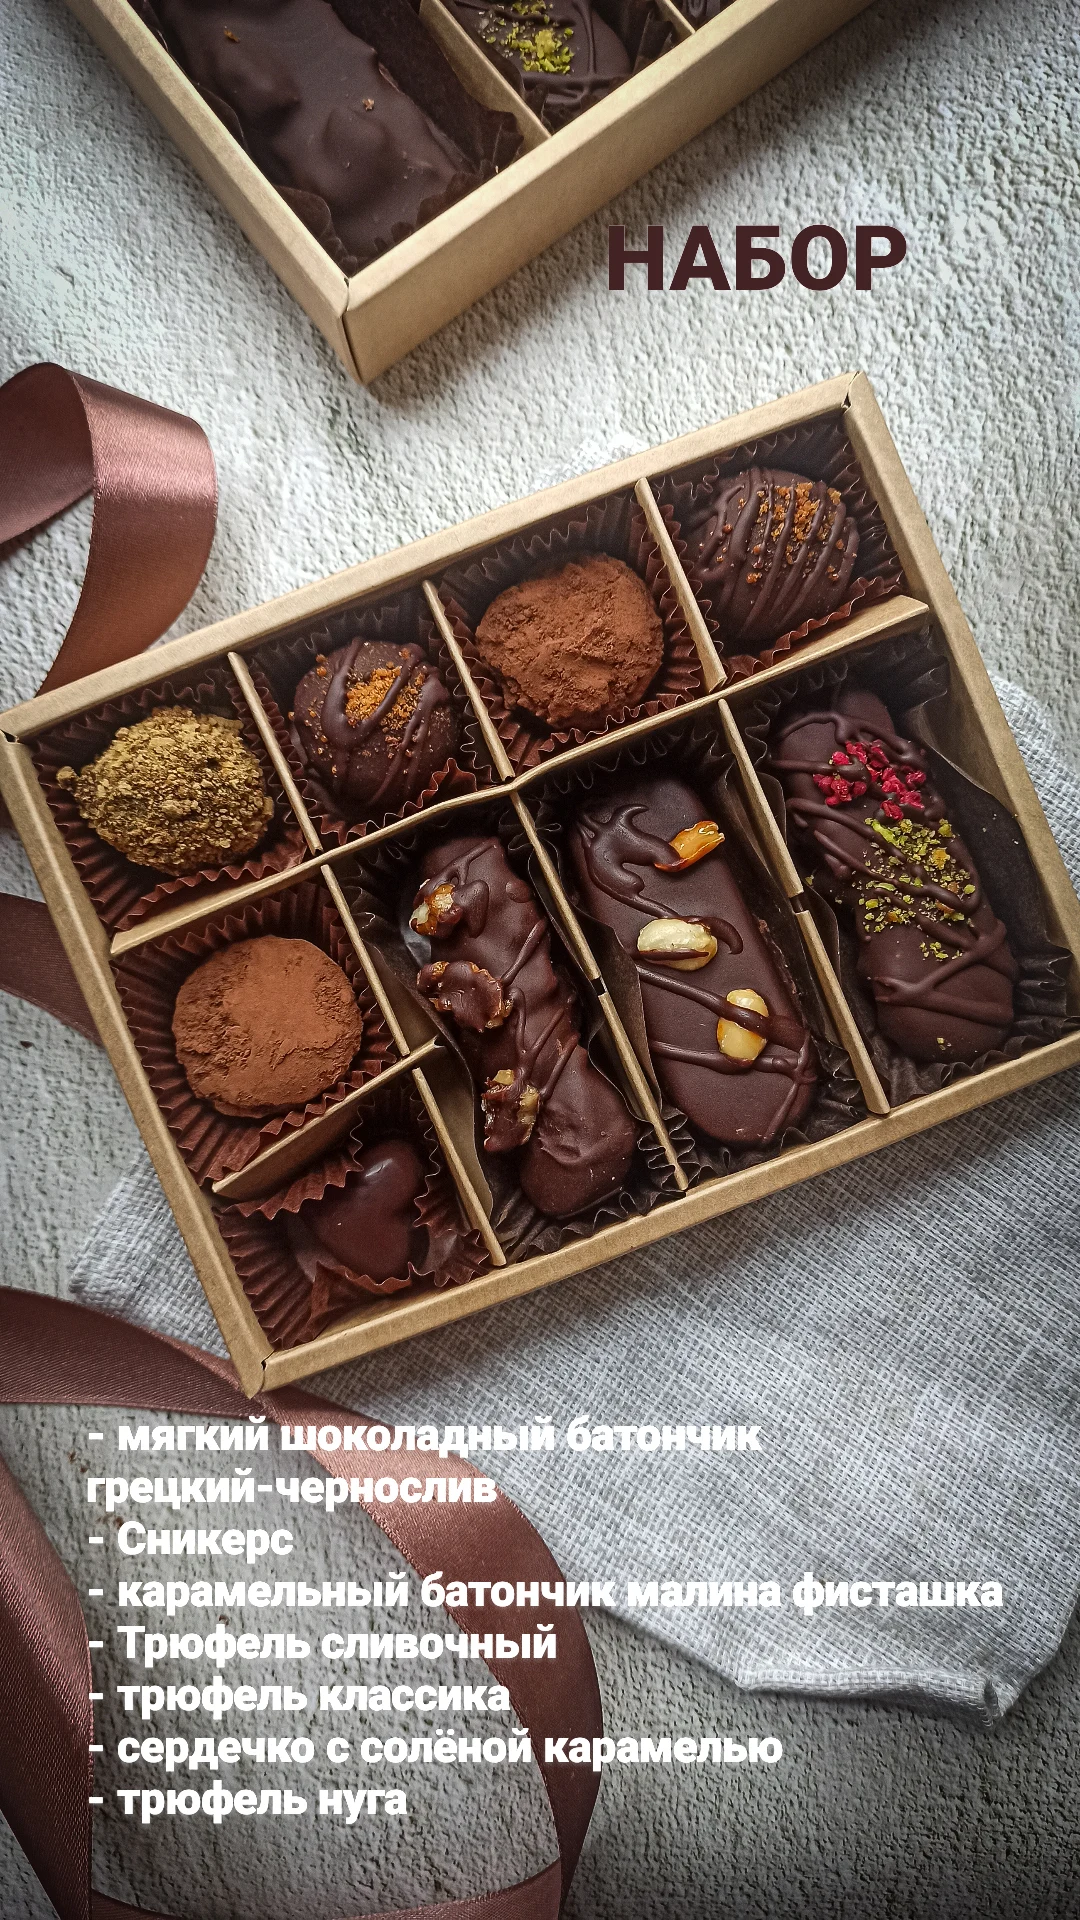 Доставка еды в городе Иваново, Собственное производство полезного шоколада конфет и